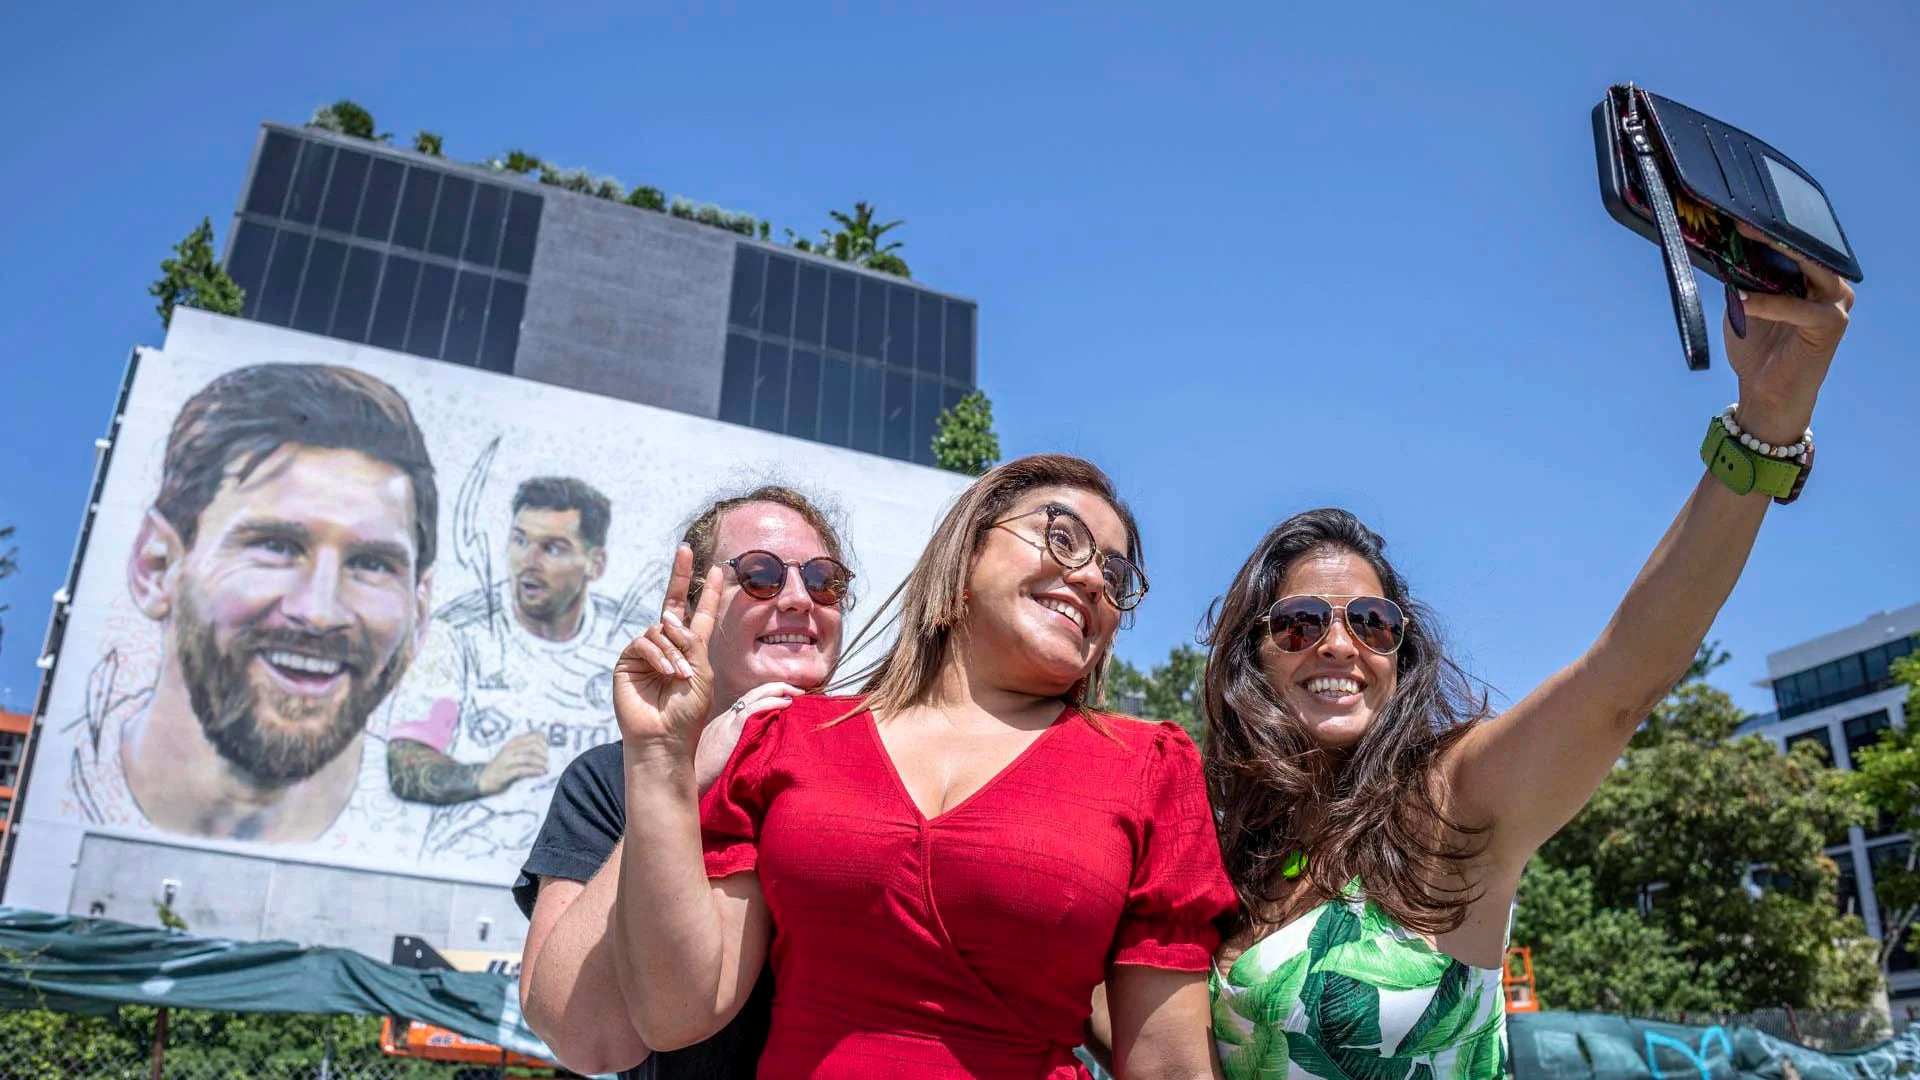 Tres aficionadas fueron registradas este lunes, 10 de julio, al tomarse una fotografía frente un mural del futbolista argentino Lionel Messi, nuevo refuerzo del equipo Inter Miami de la MLS, hecho por el artista Maximiliano Bagnasco, en Wynwood (Florida, EE.UU.). EFE/Cristóbal Herrera
